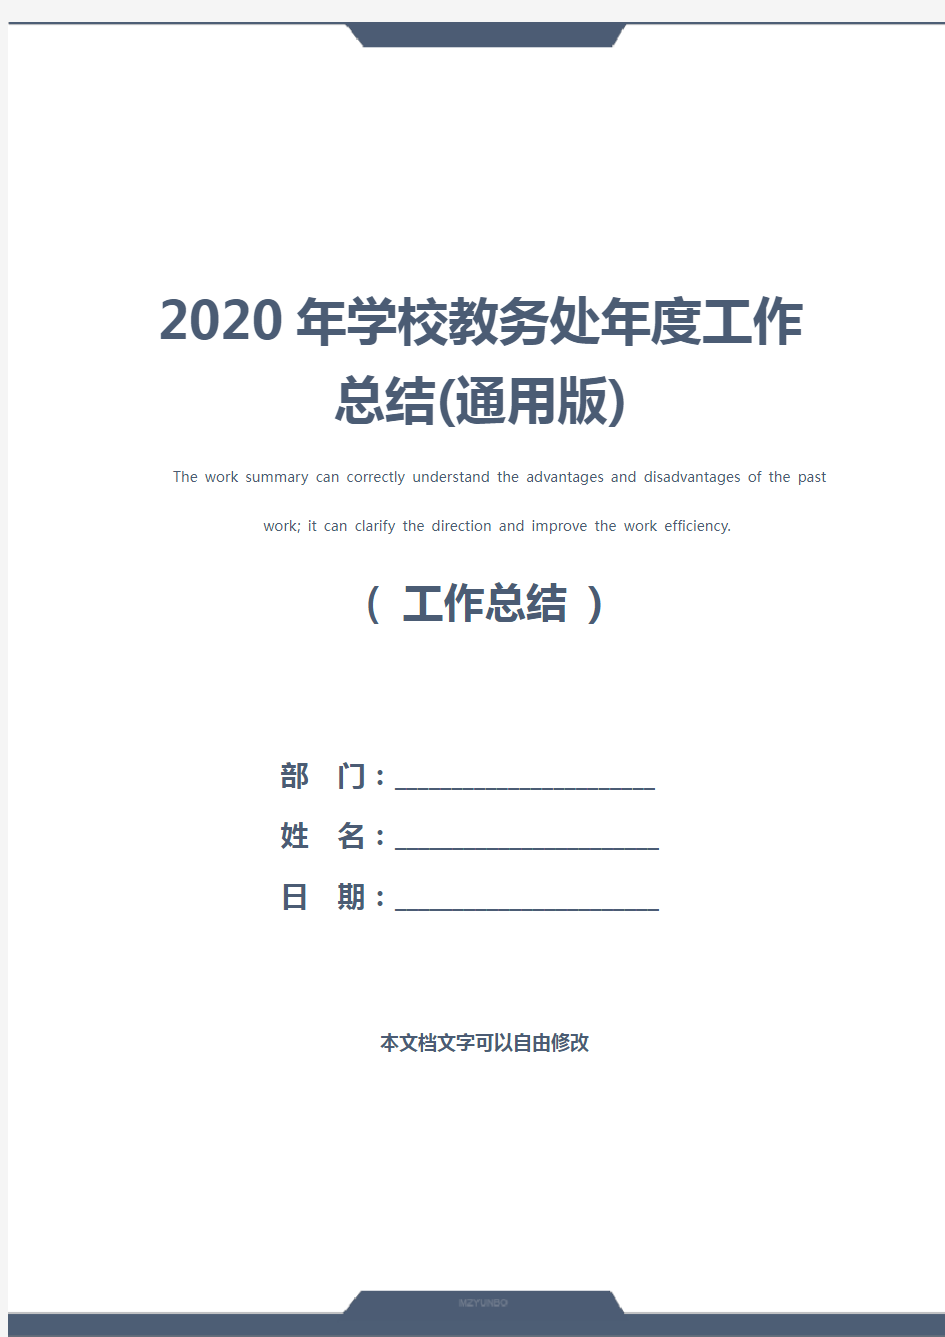 2020年学校教务处年度工作总结(通用版)